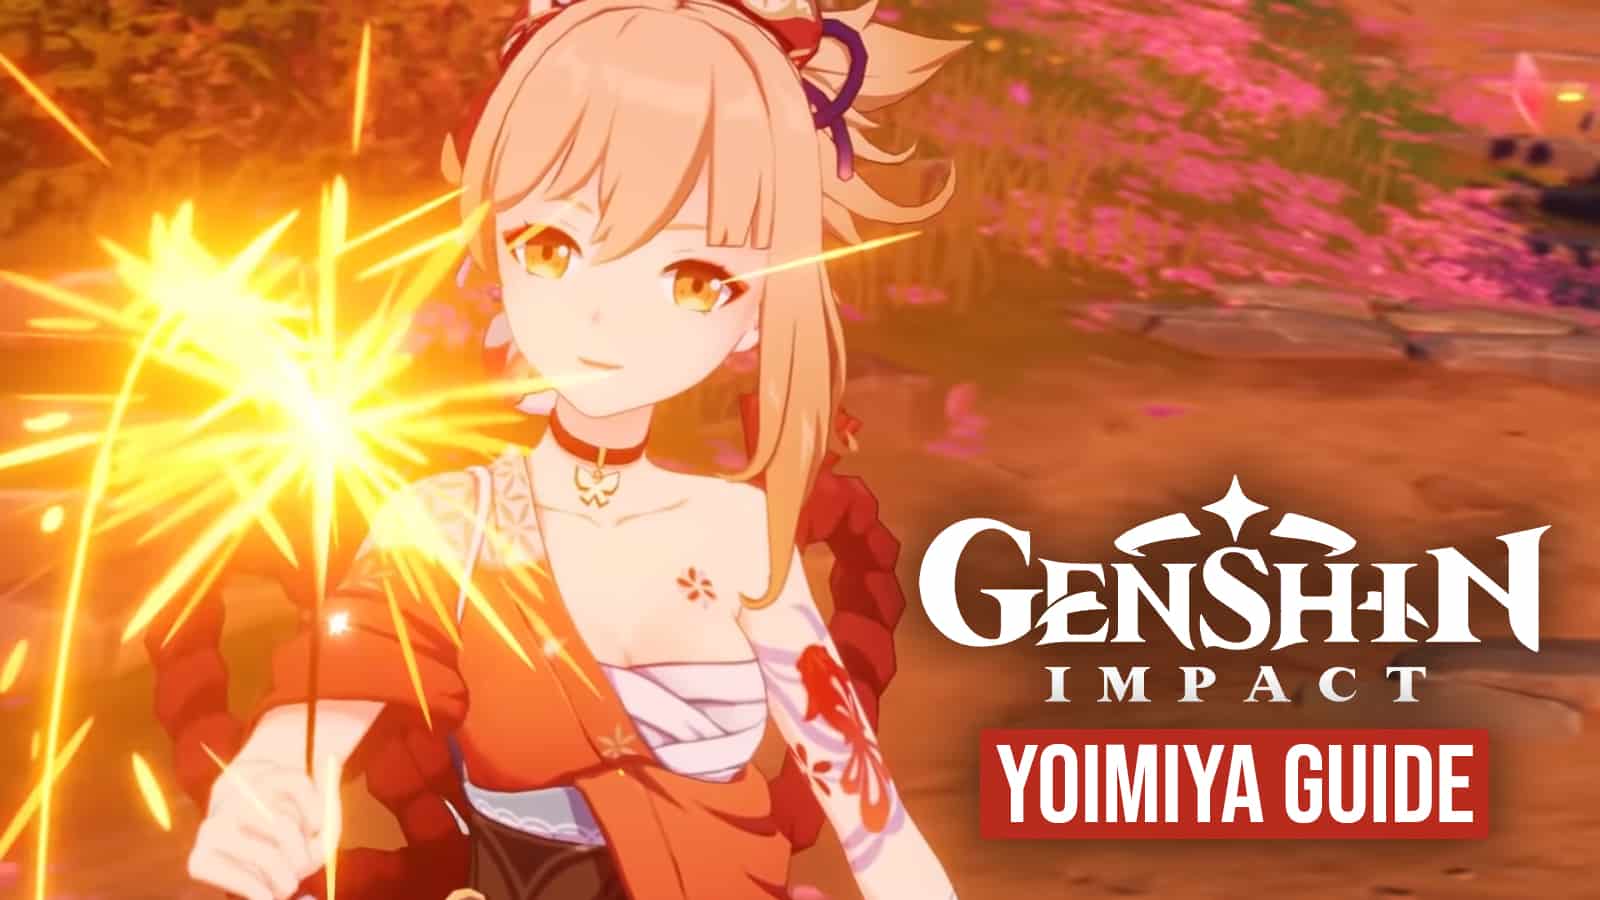 Yoimiya waving sparkler in Genshin Impact